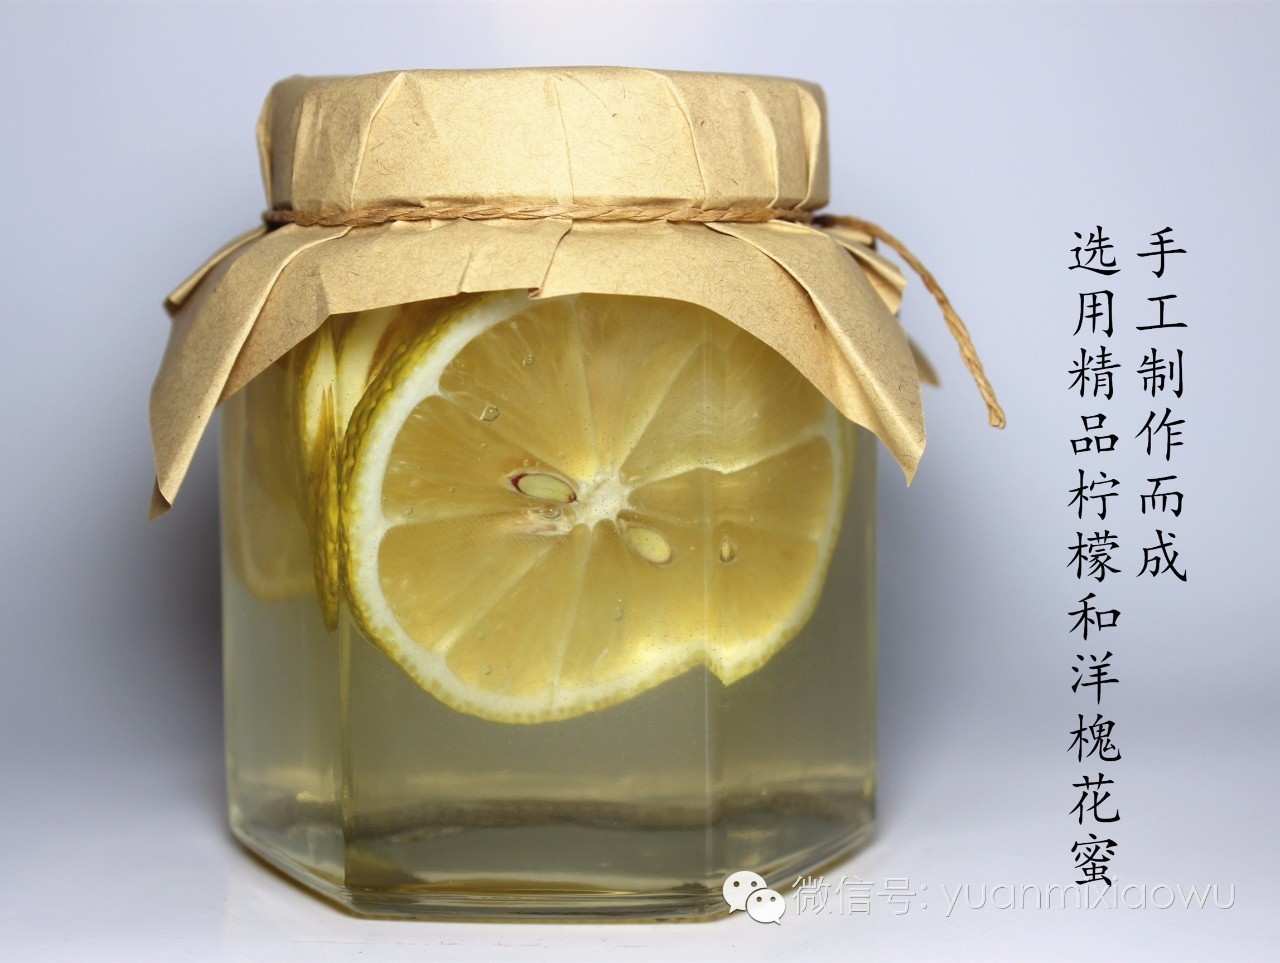 进口蜂蜜好吗 珍珠粉蜂蜜面膜 蜂蜜绿茶 蜂蜜美容法 蜂蜜水什么时候喝最好